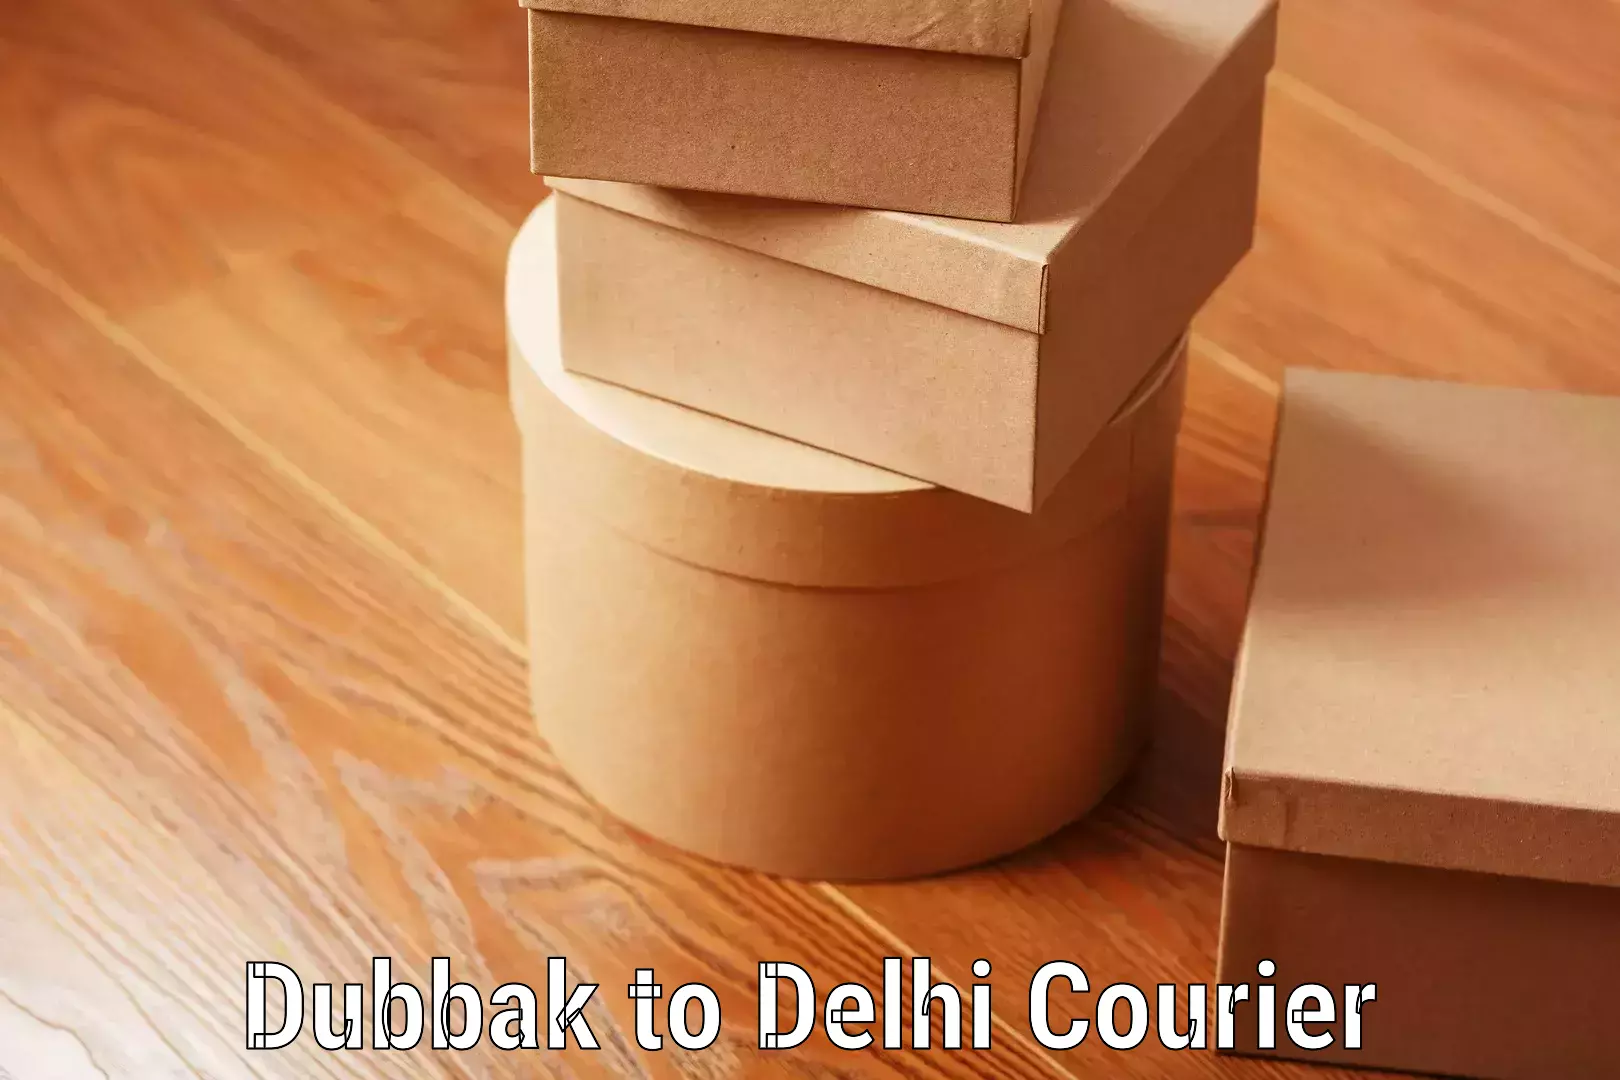 Luggage shipment tracking Dubbak to Delhi